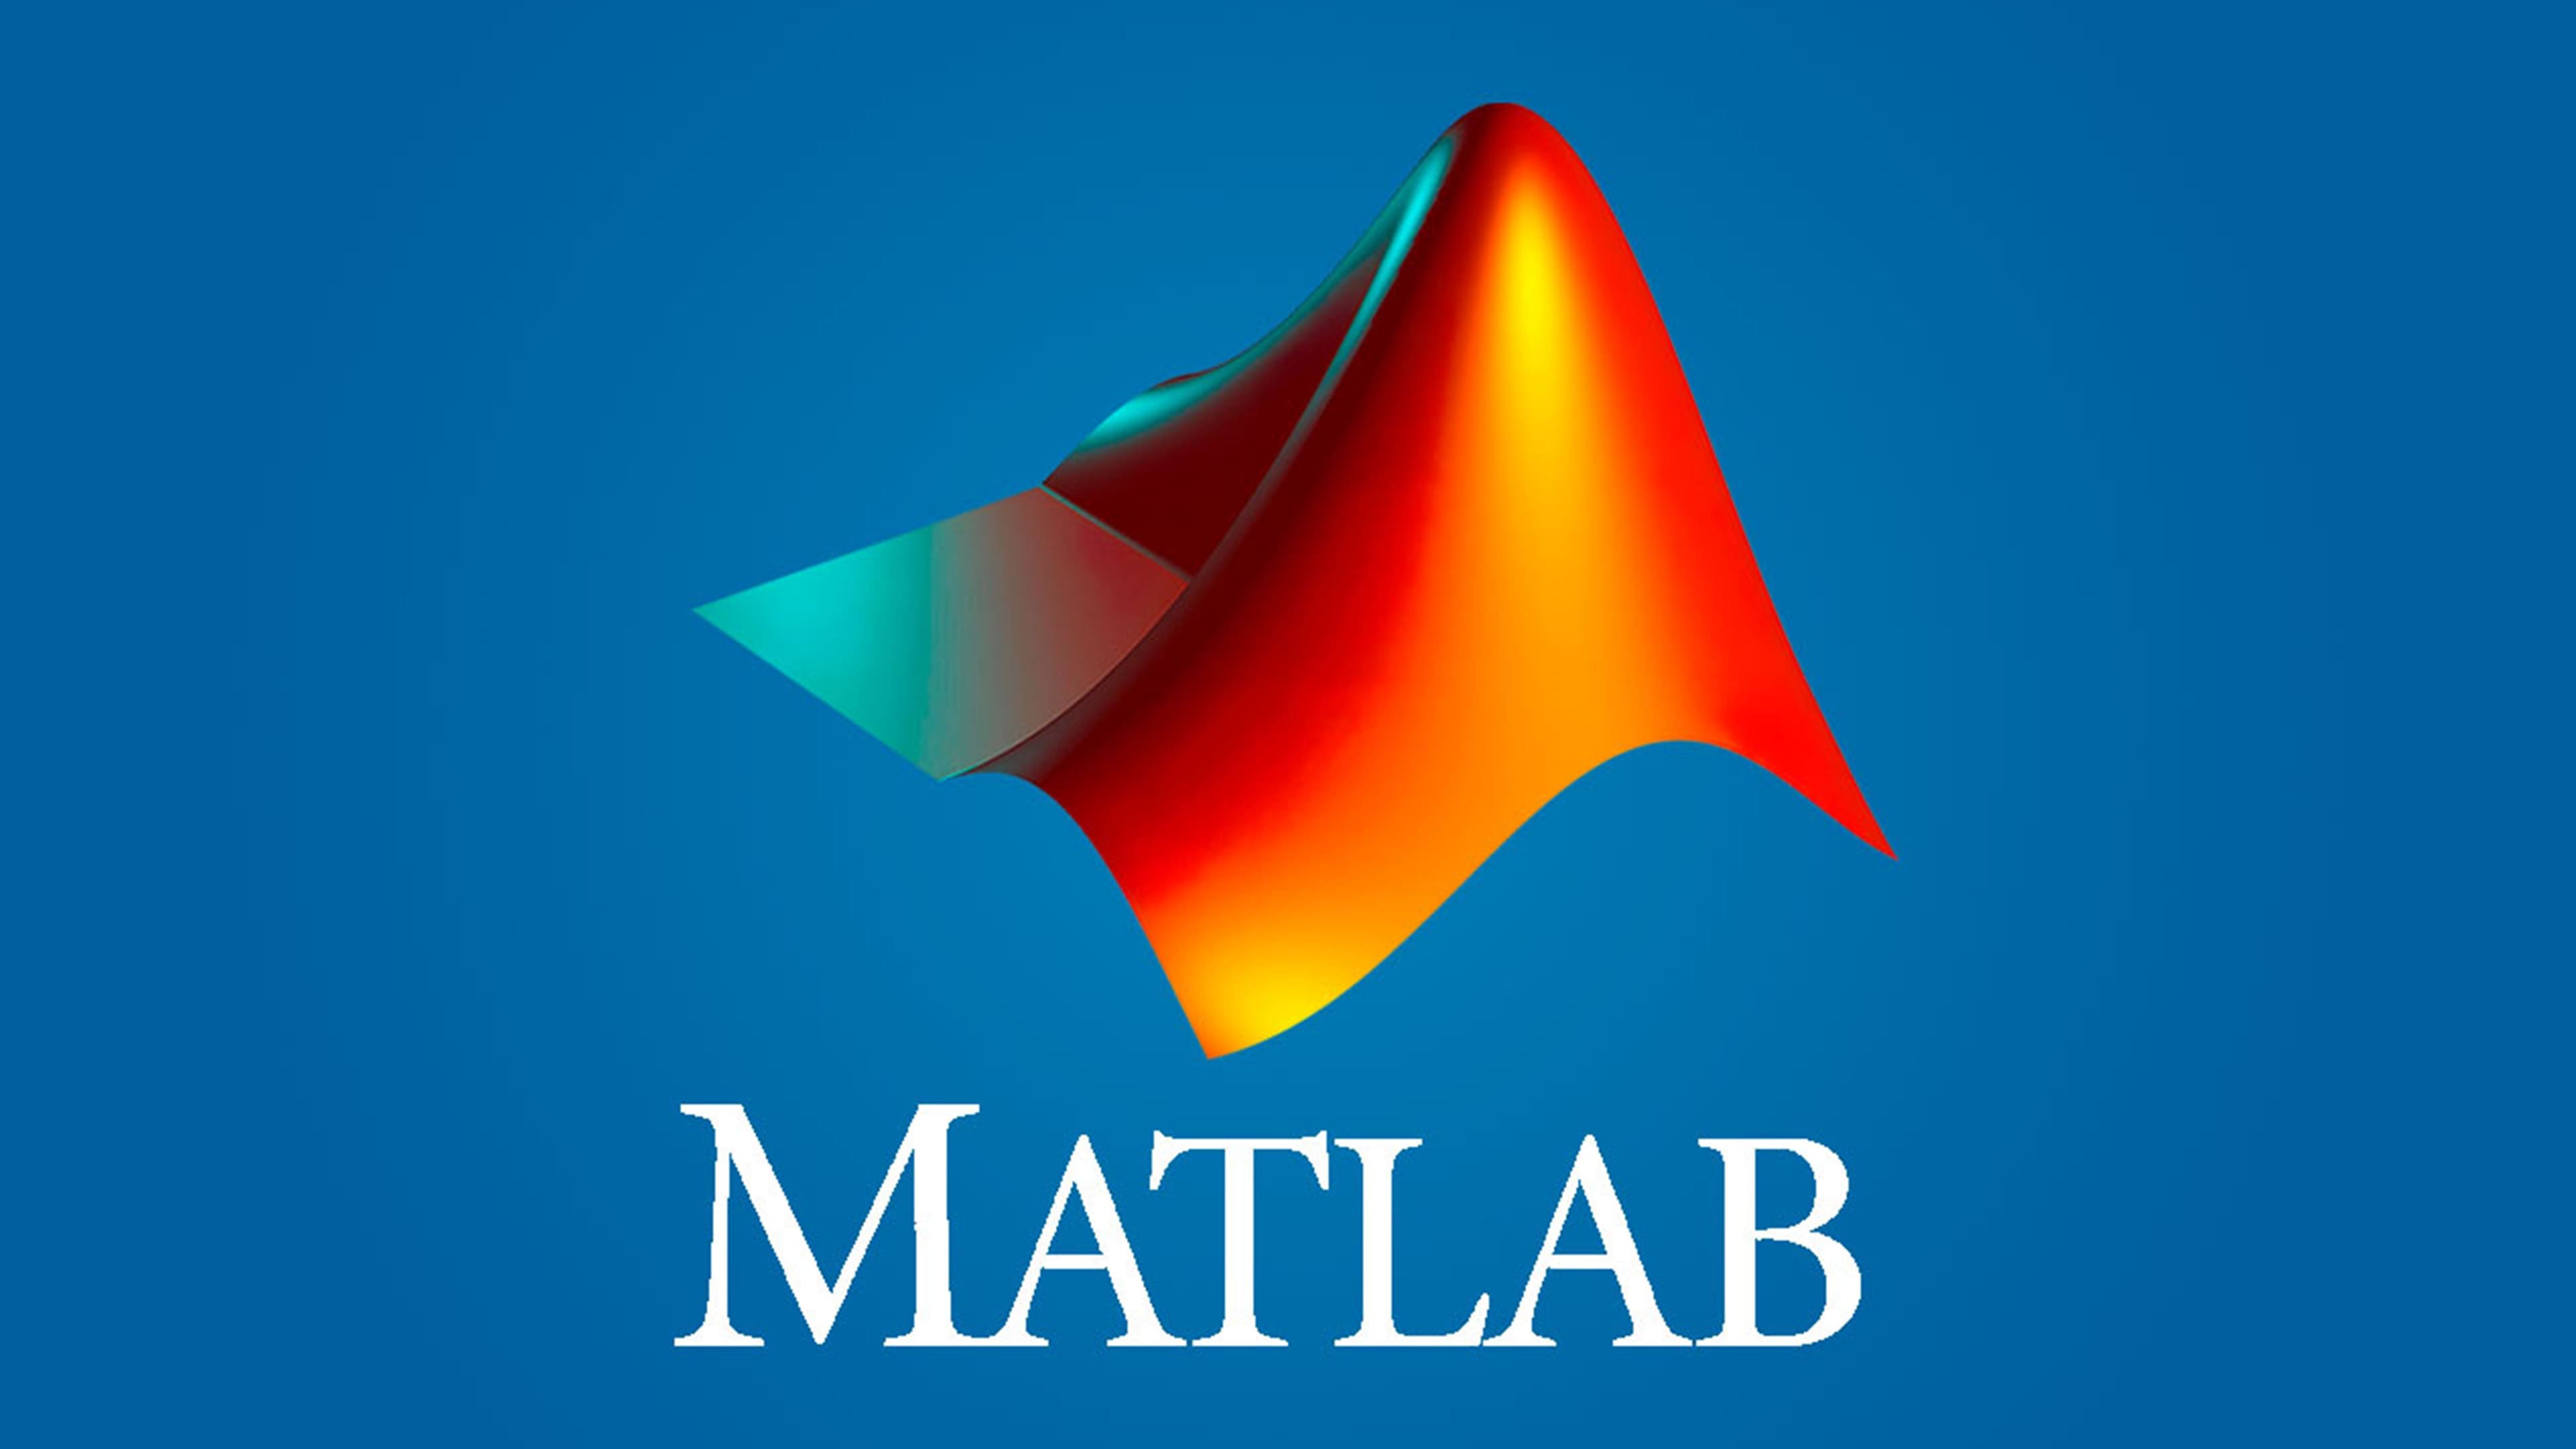 MATLAB Logo y símbolo, significado, historia, PNG, marca